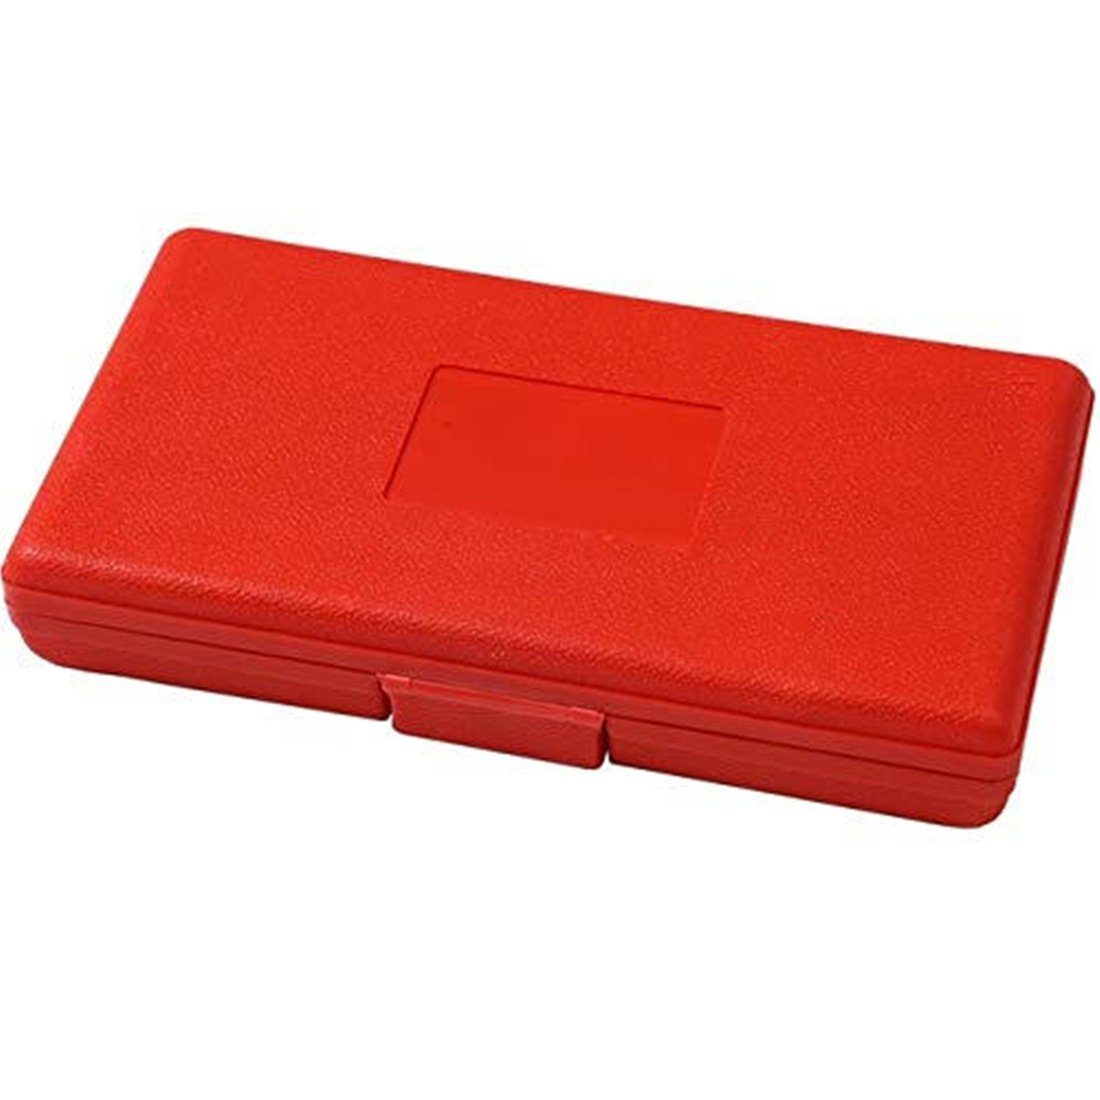 Steckschlüssel Steckschlüsselsatz & Knarre 1/4, Orange-rot (46-St) Werkzeugset K P Knarrenkasten